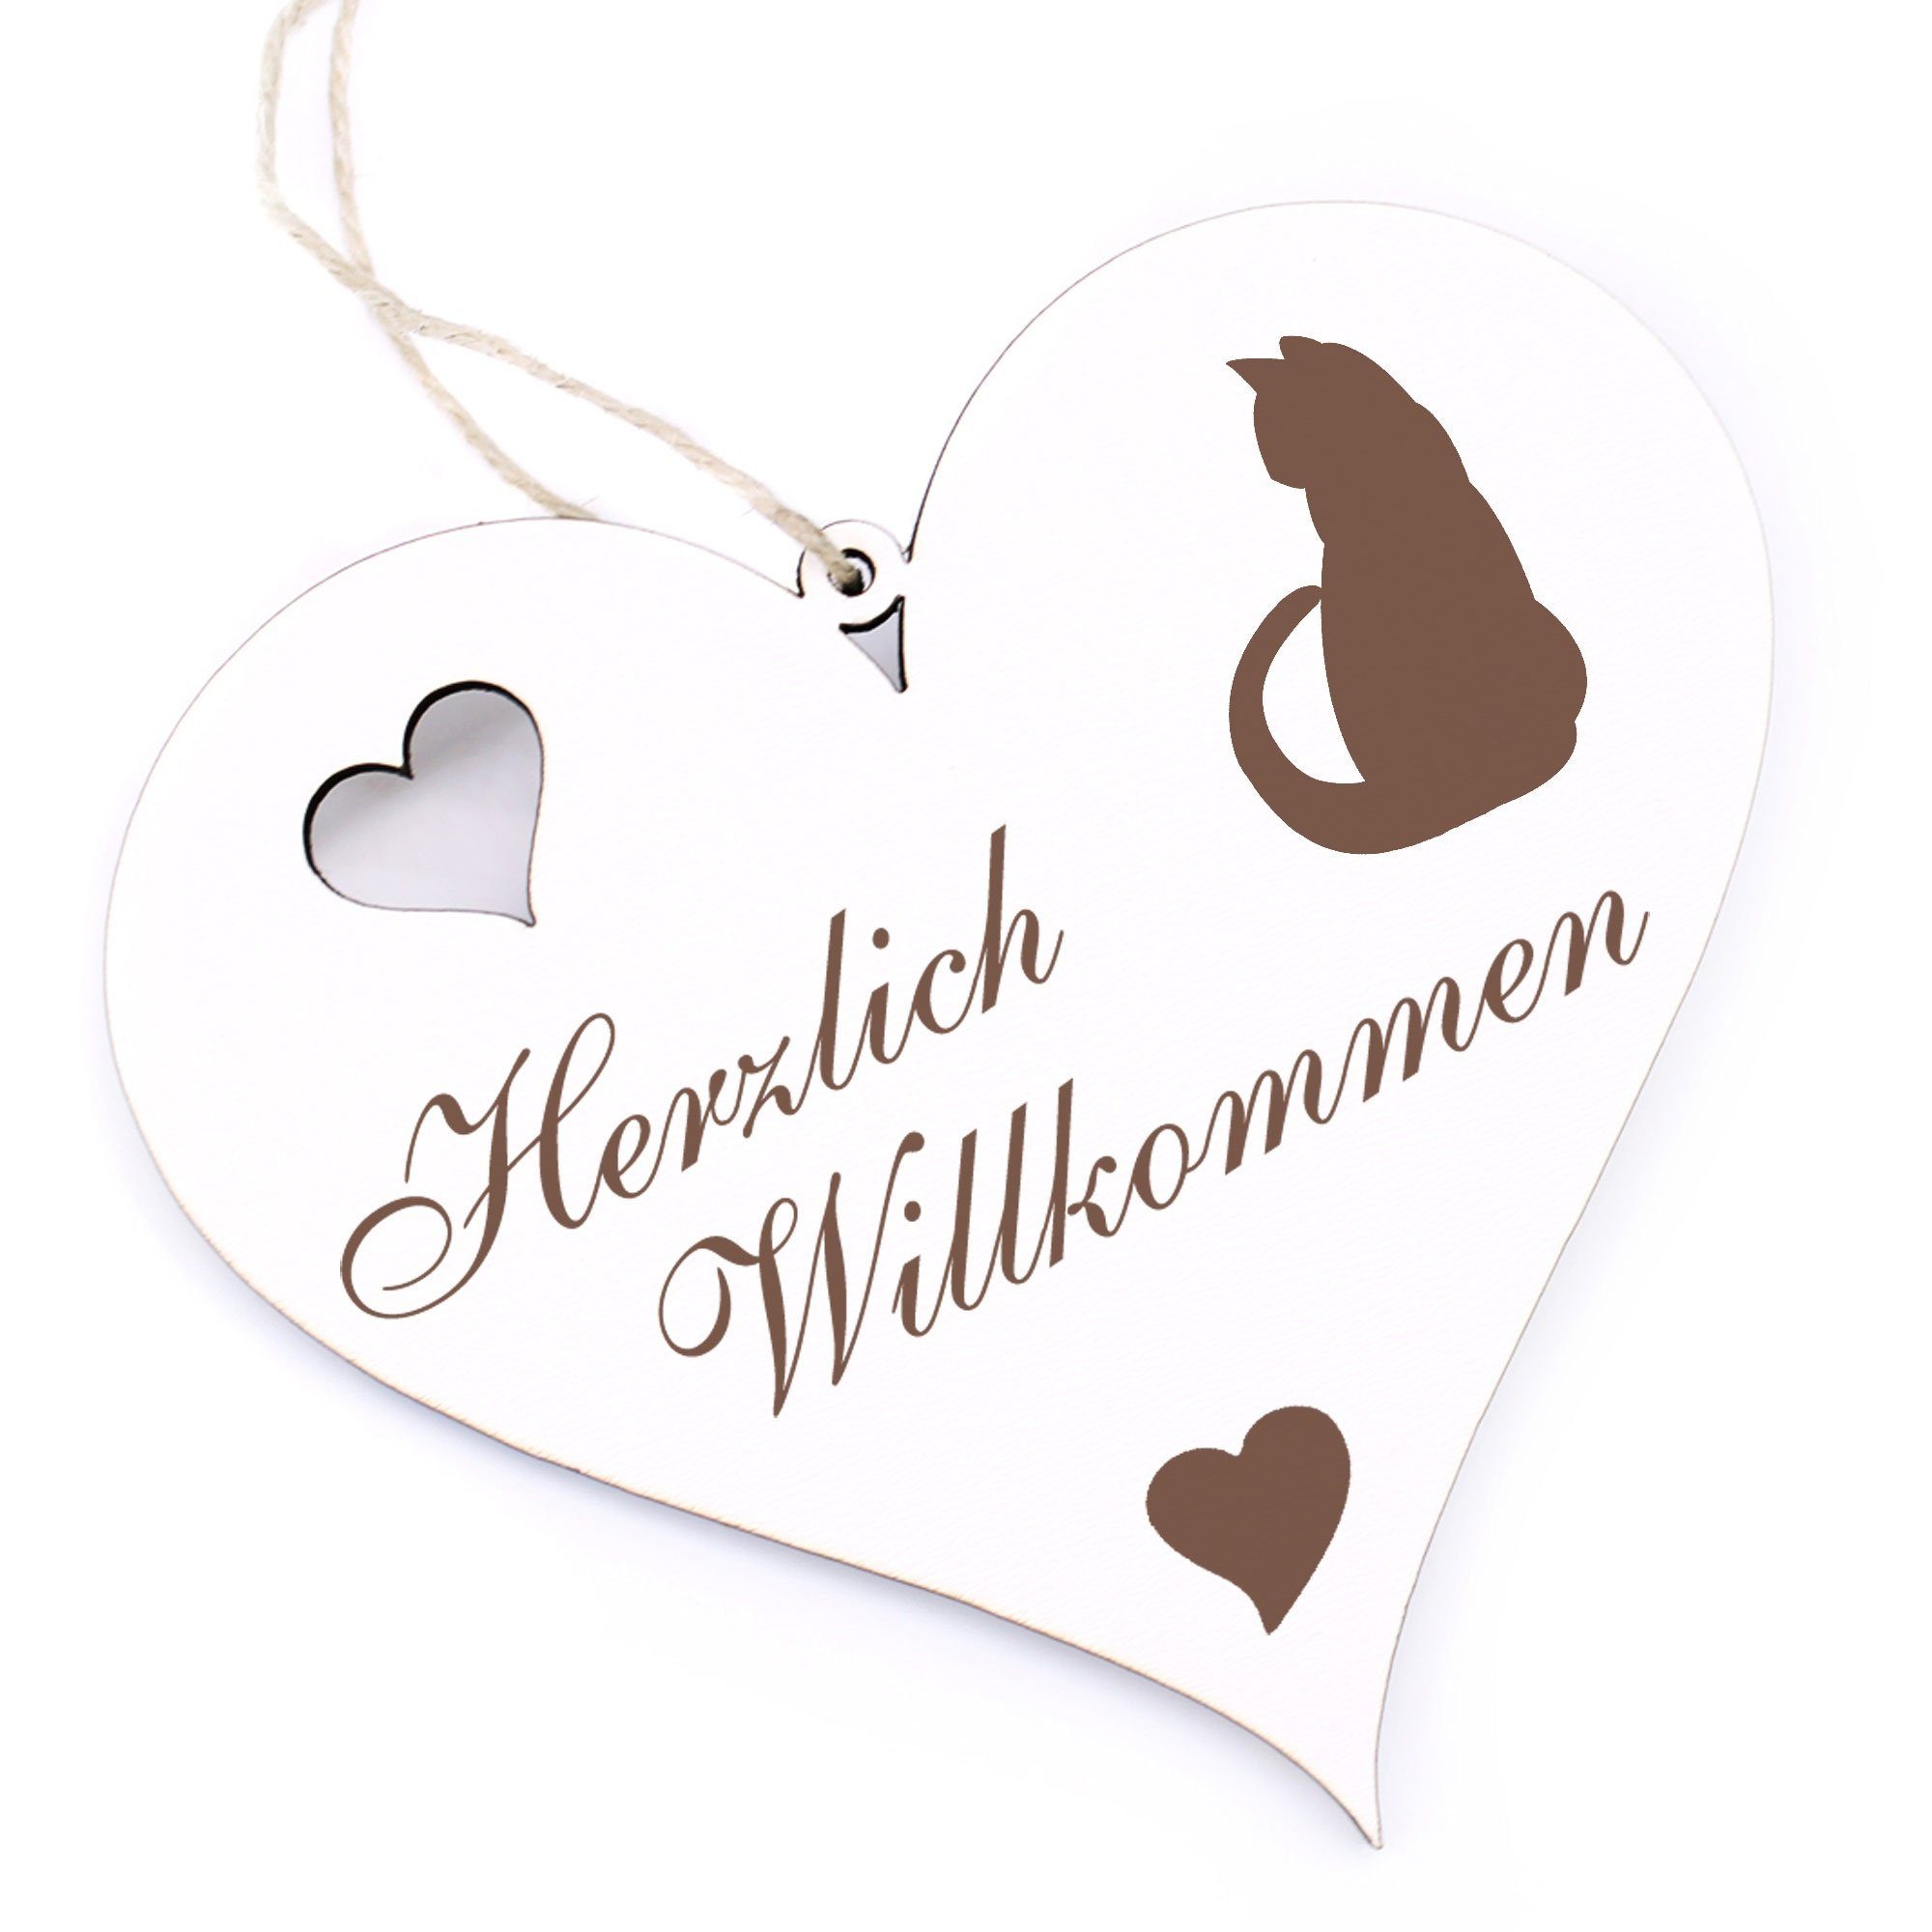 Willkommen - Hängedekoration Katze 13x12cm Dekolando Silhouette - Herzlich